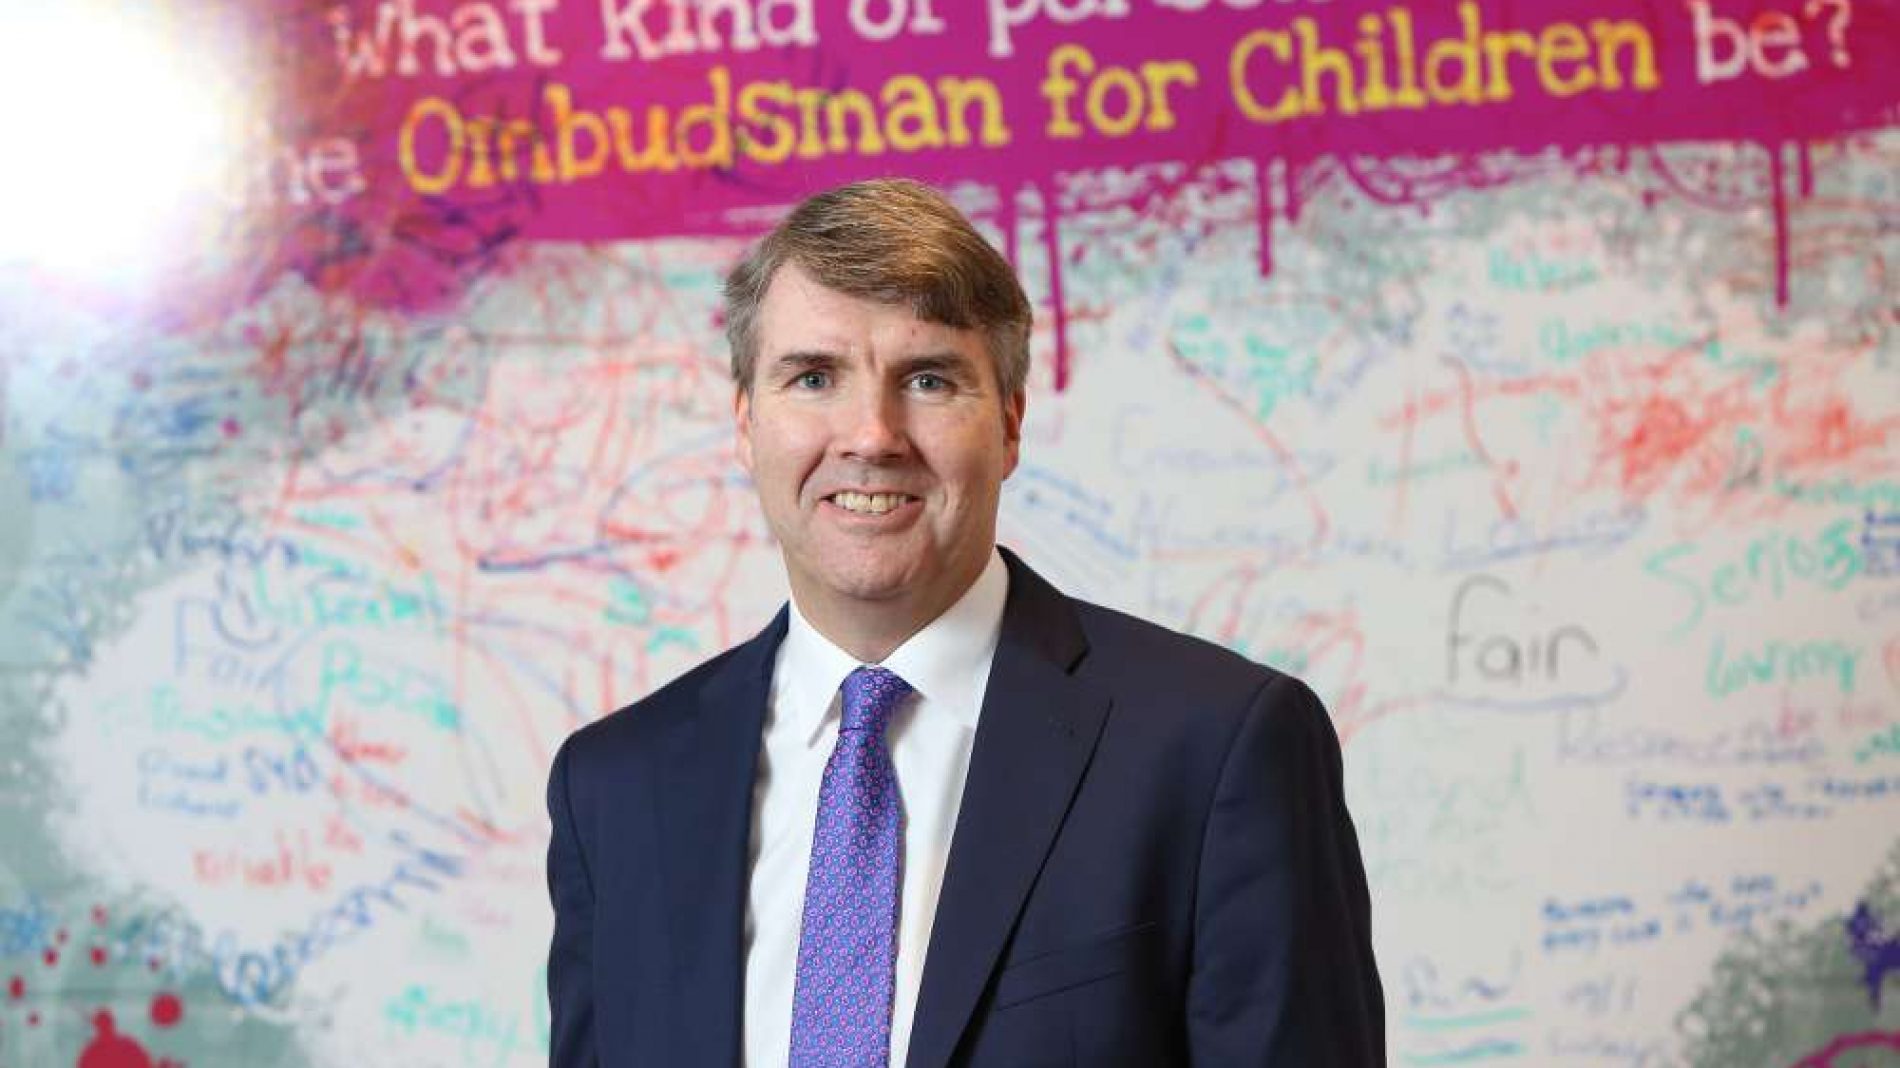 The Ombudsman for Children